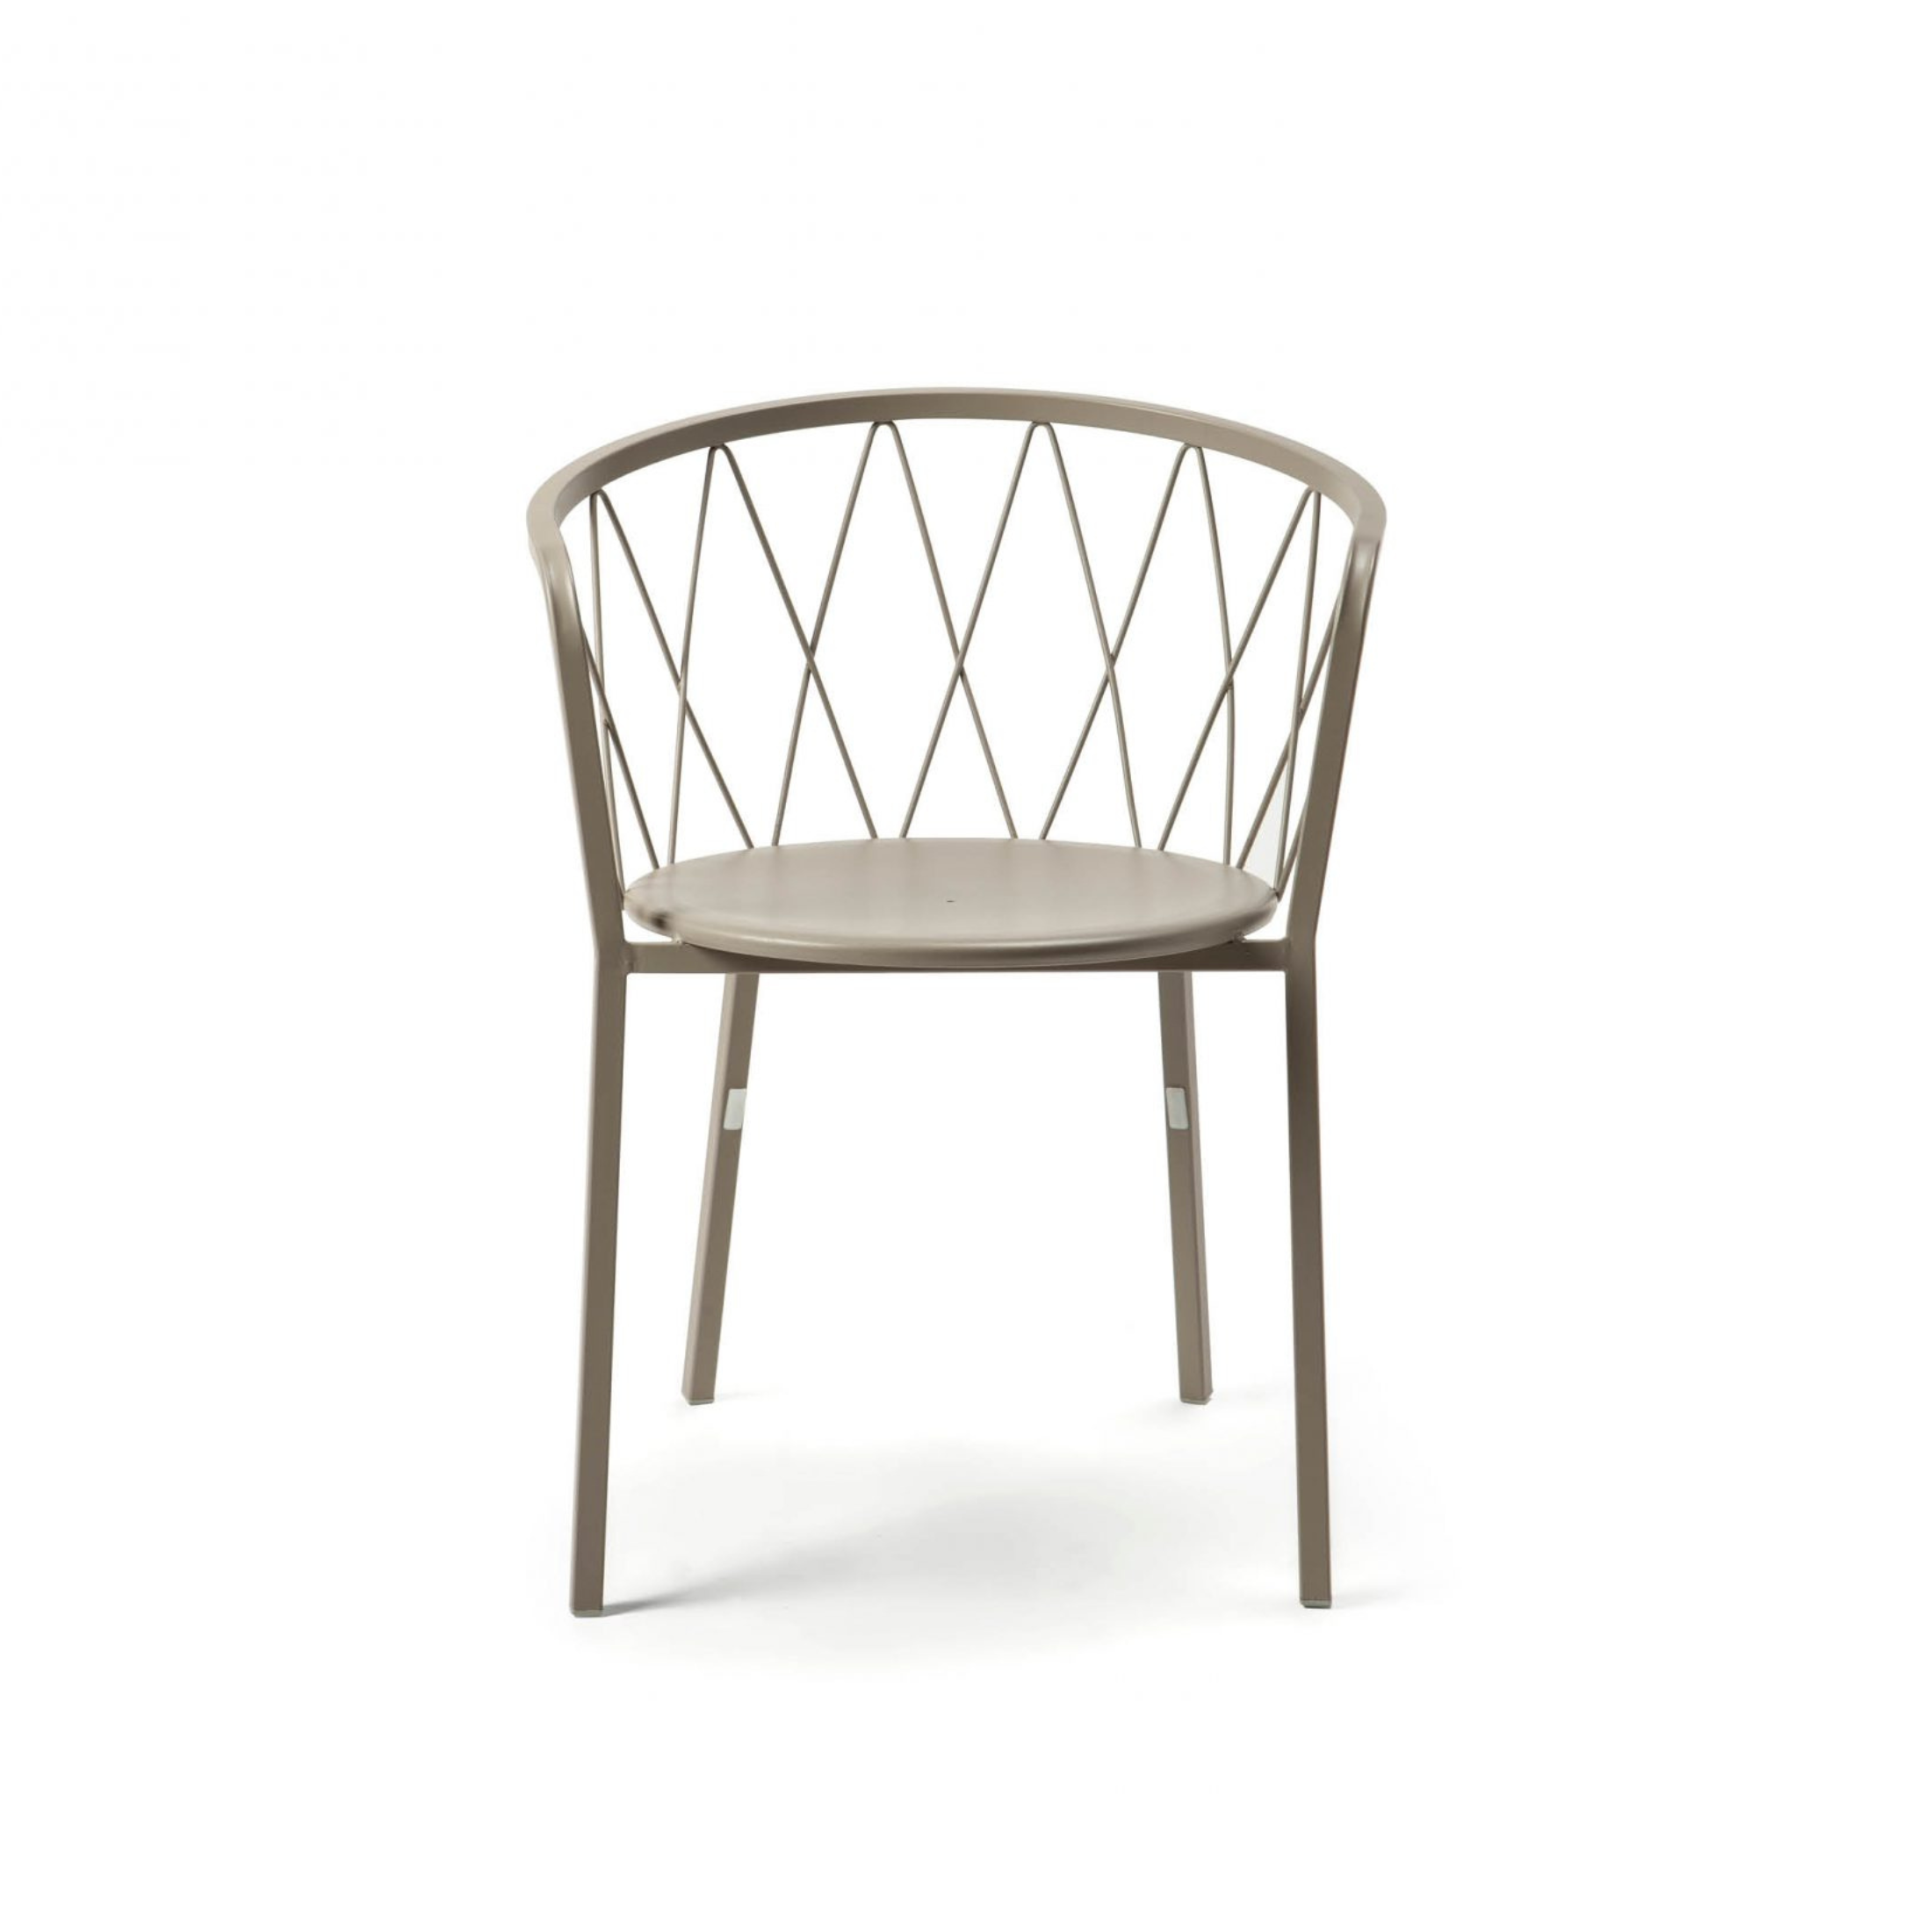 Fauteuil de jardin en métal peint chaise empilable "Daisy" 57x55 cm 75h